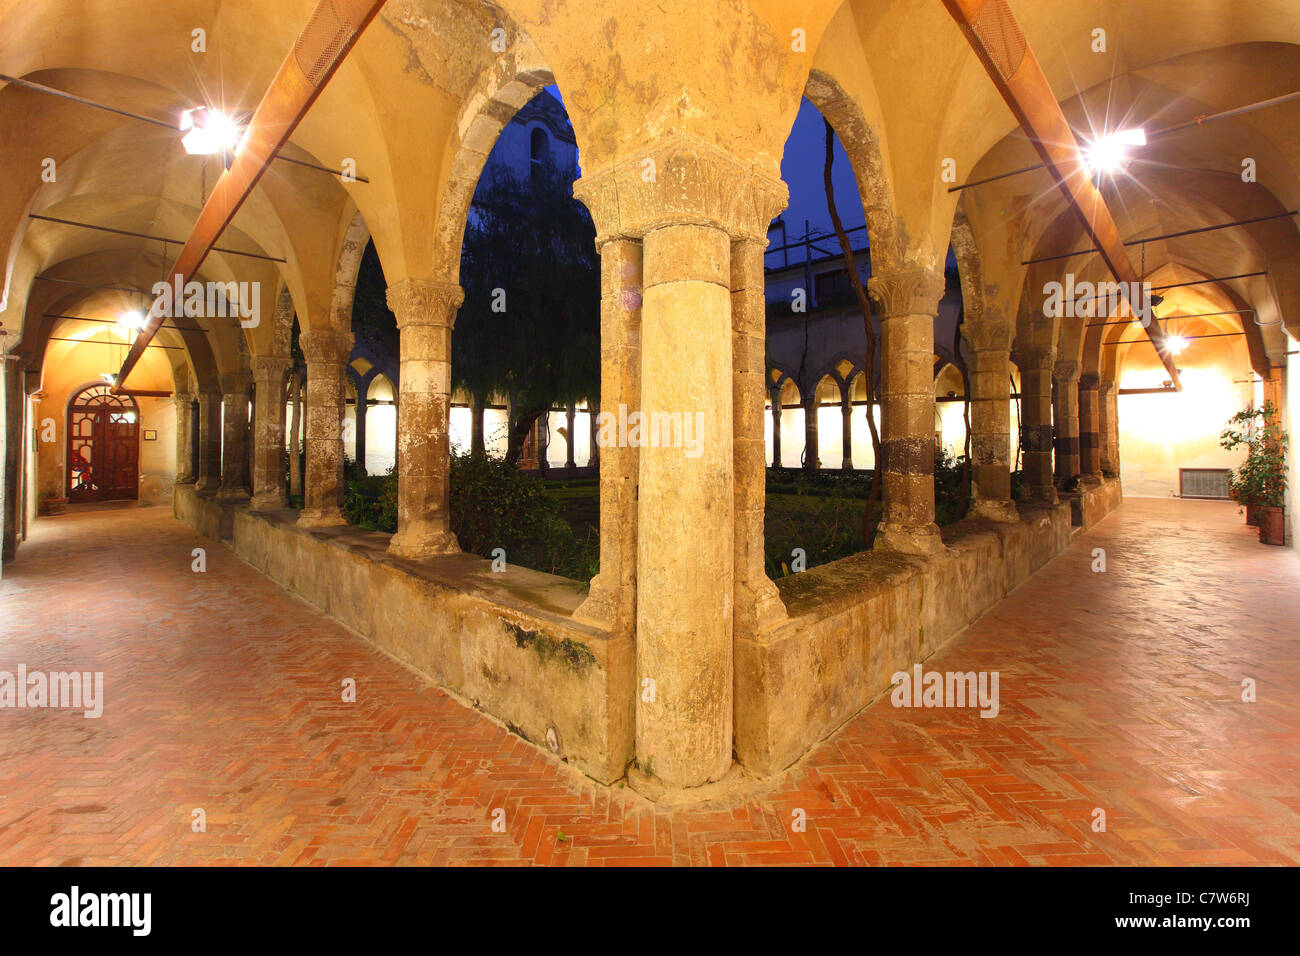 Italy, Campania, Sorrento, San Francesco cloister at night Stock Photo